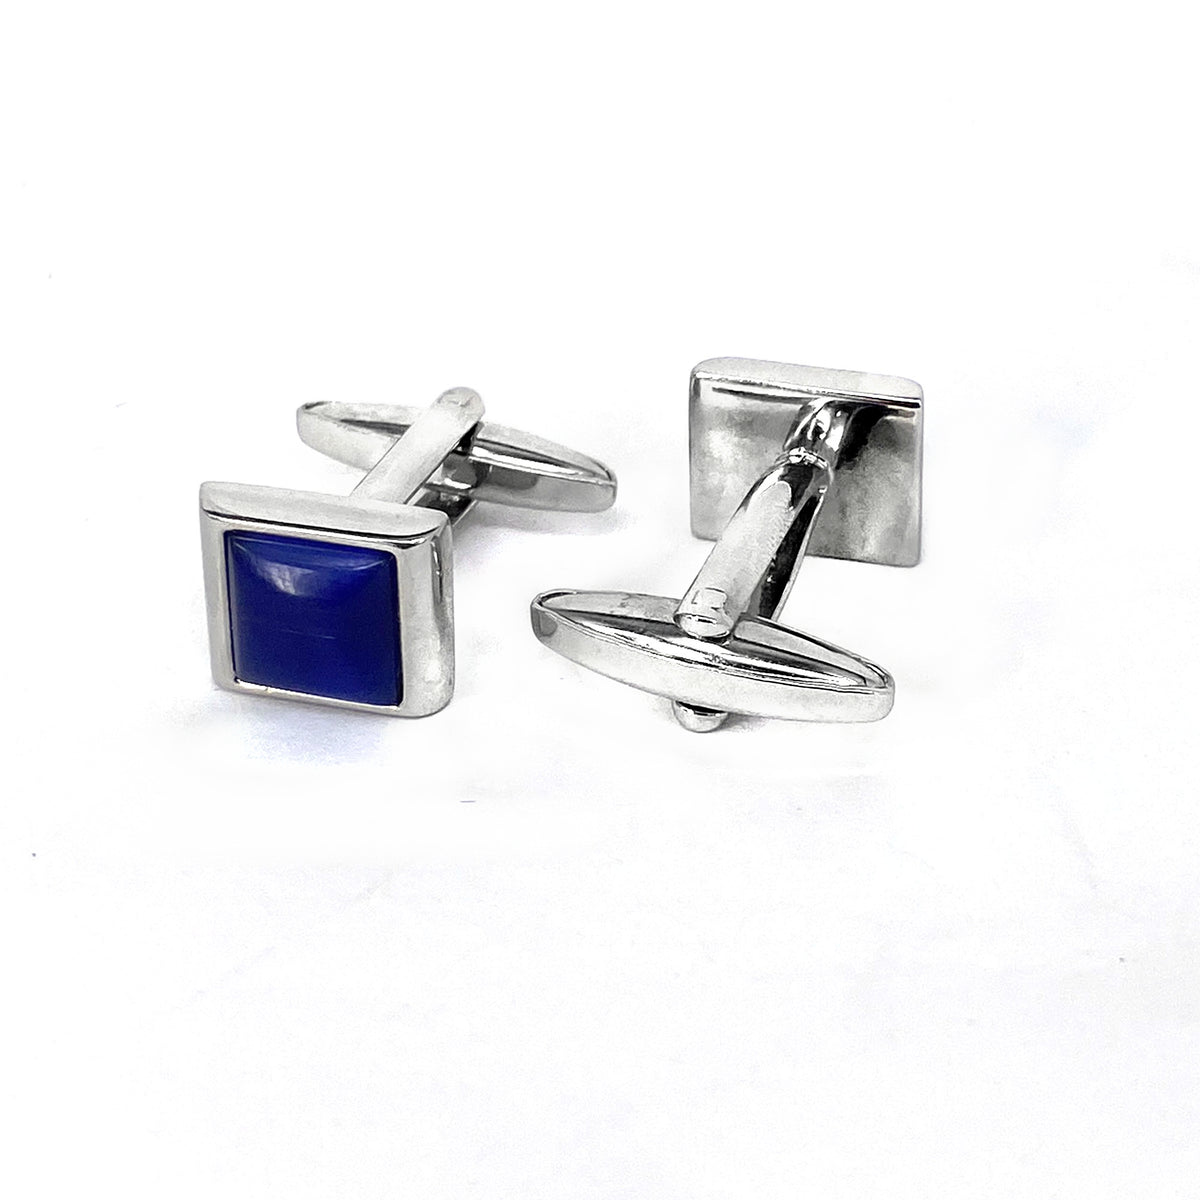 Rectangular Blue Fiber Glass Small Size Cufflinks (Online Exclusive)